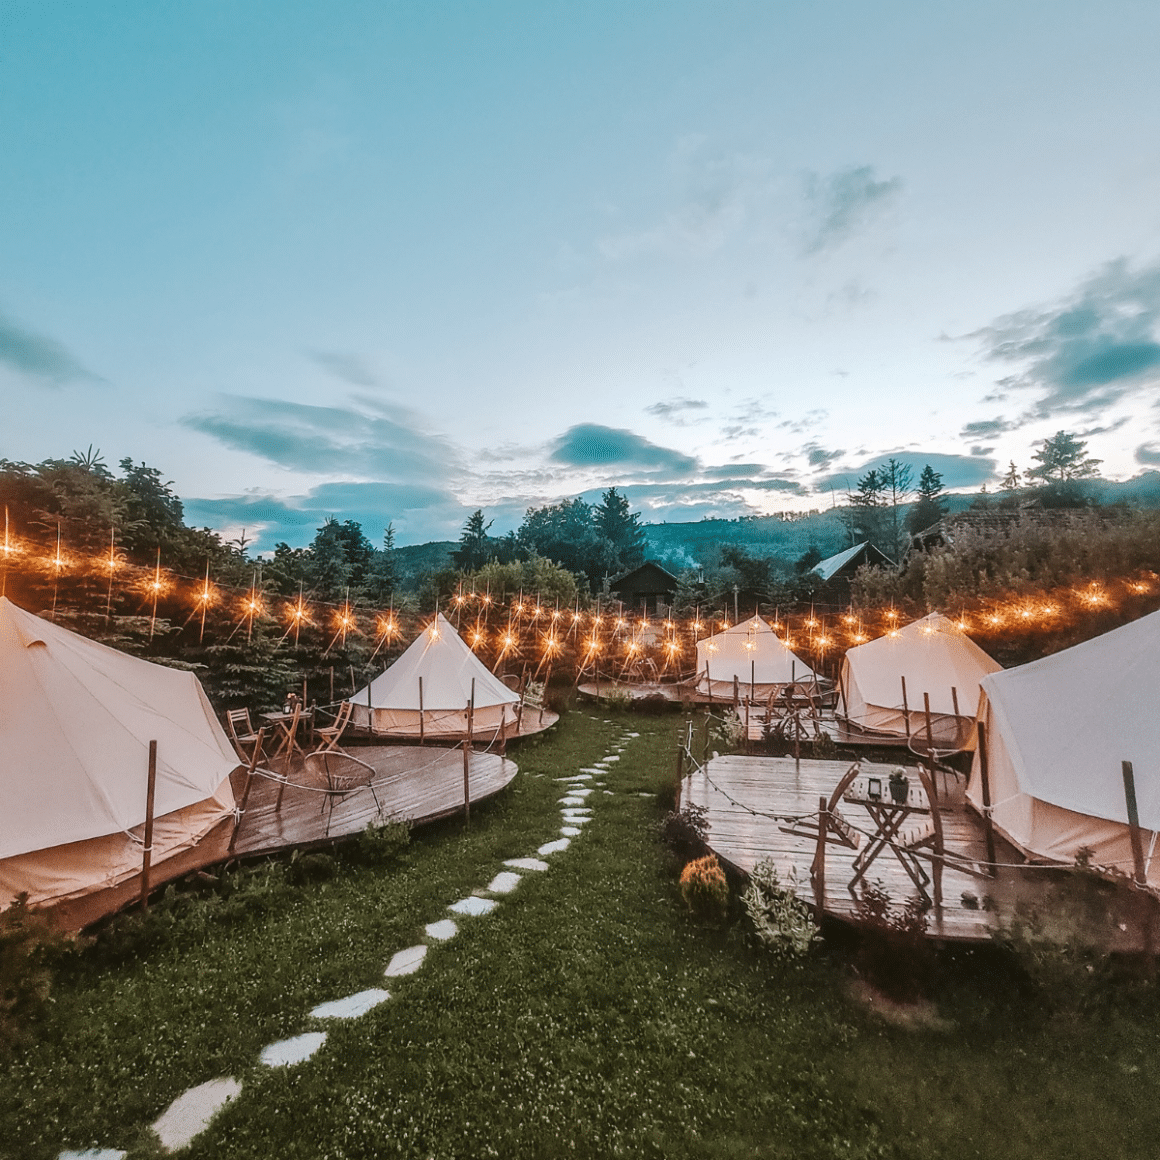 Complexul de glamping în România Valea Doftanei Glamping, cu mai multe corturi asezate pe gazon si marginite de copaci, cu luminite aprinse printre ele